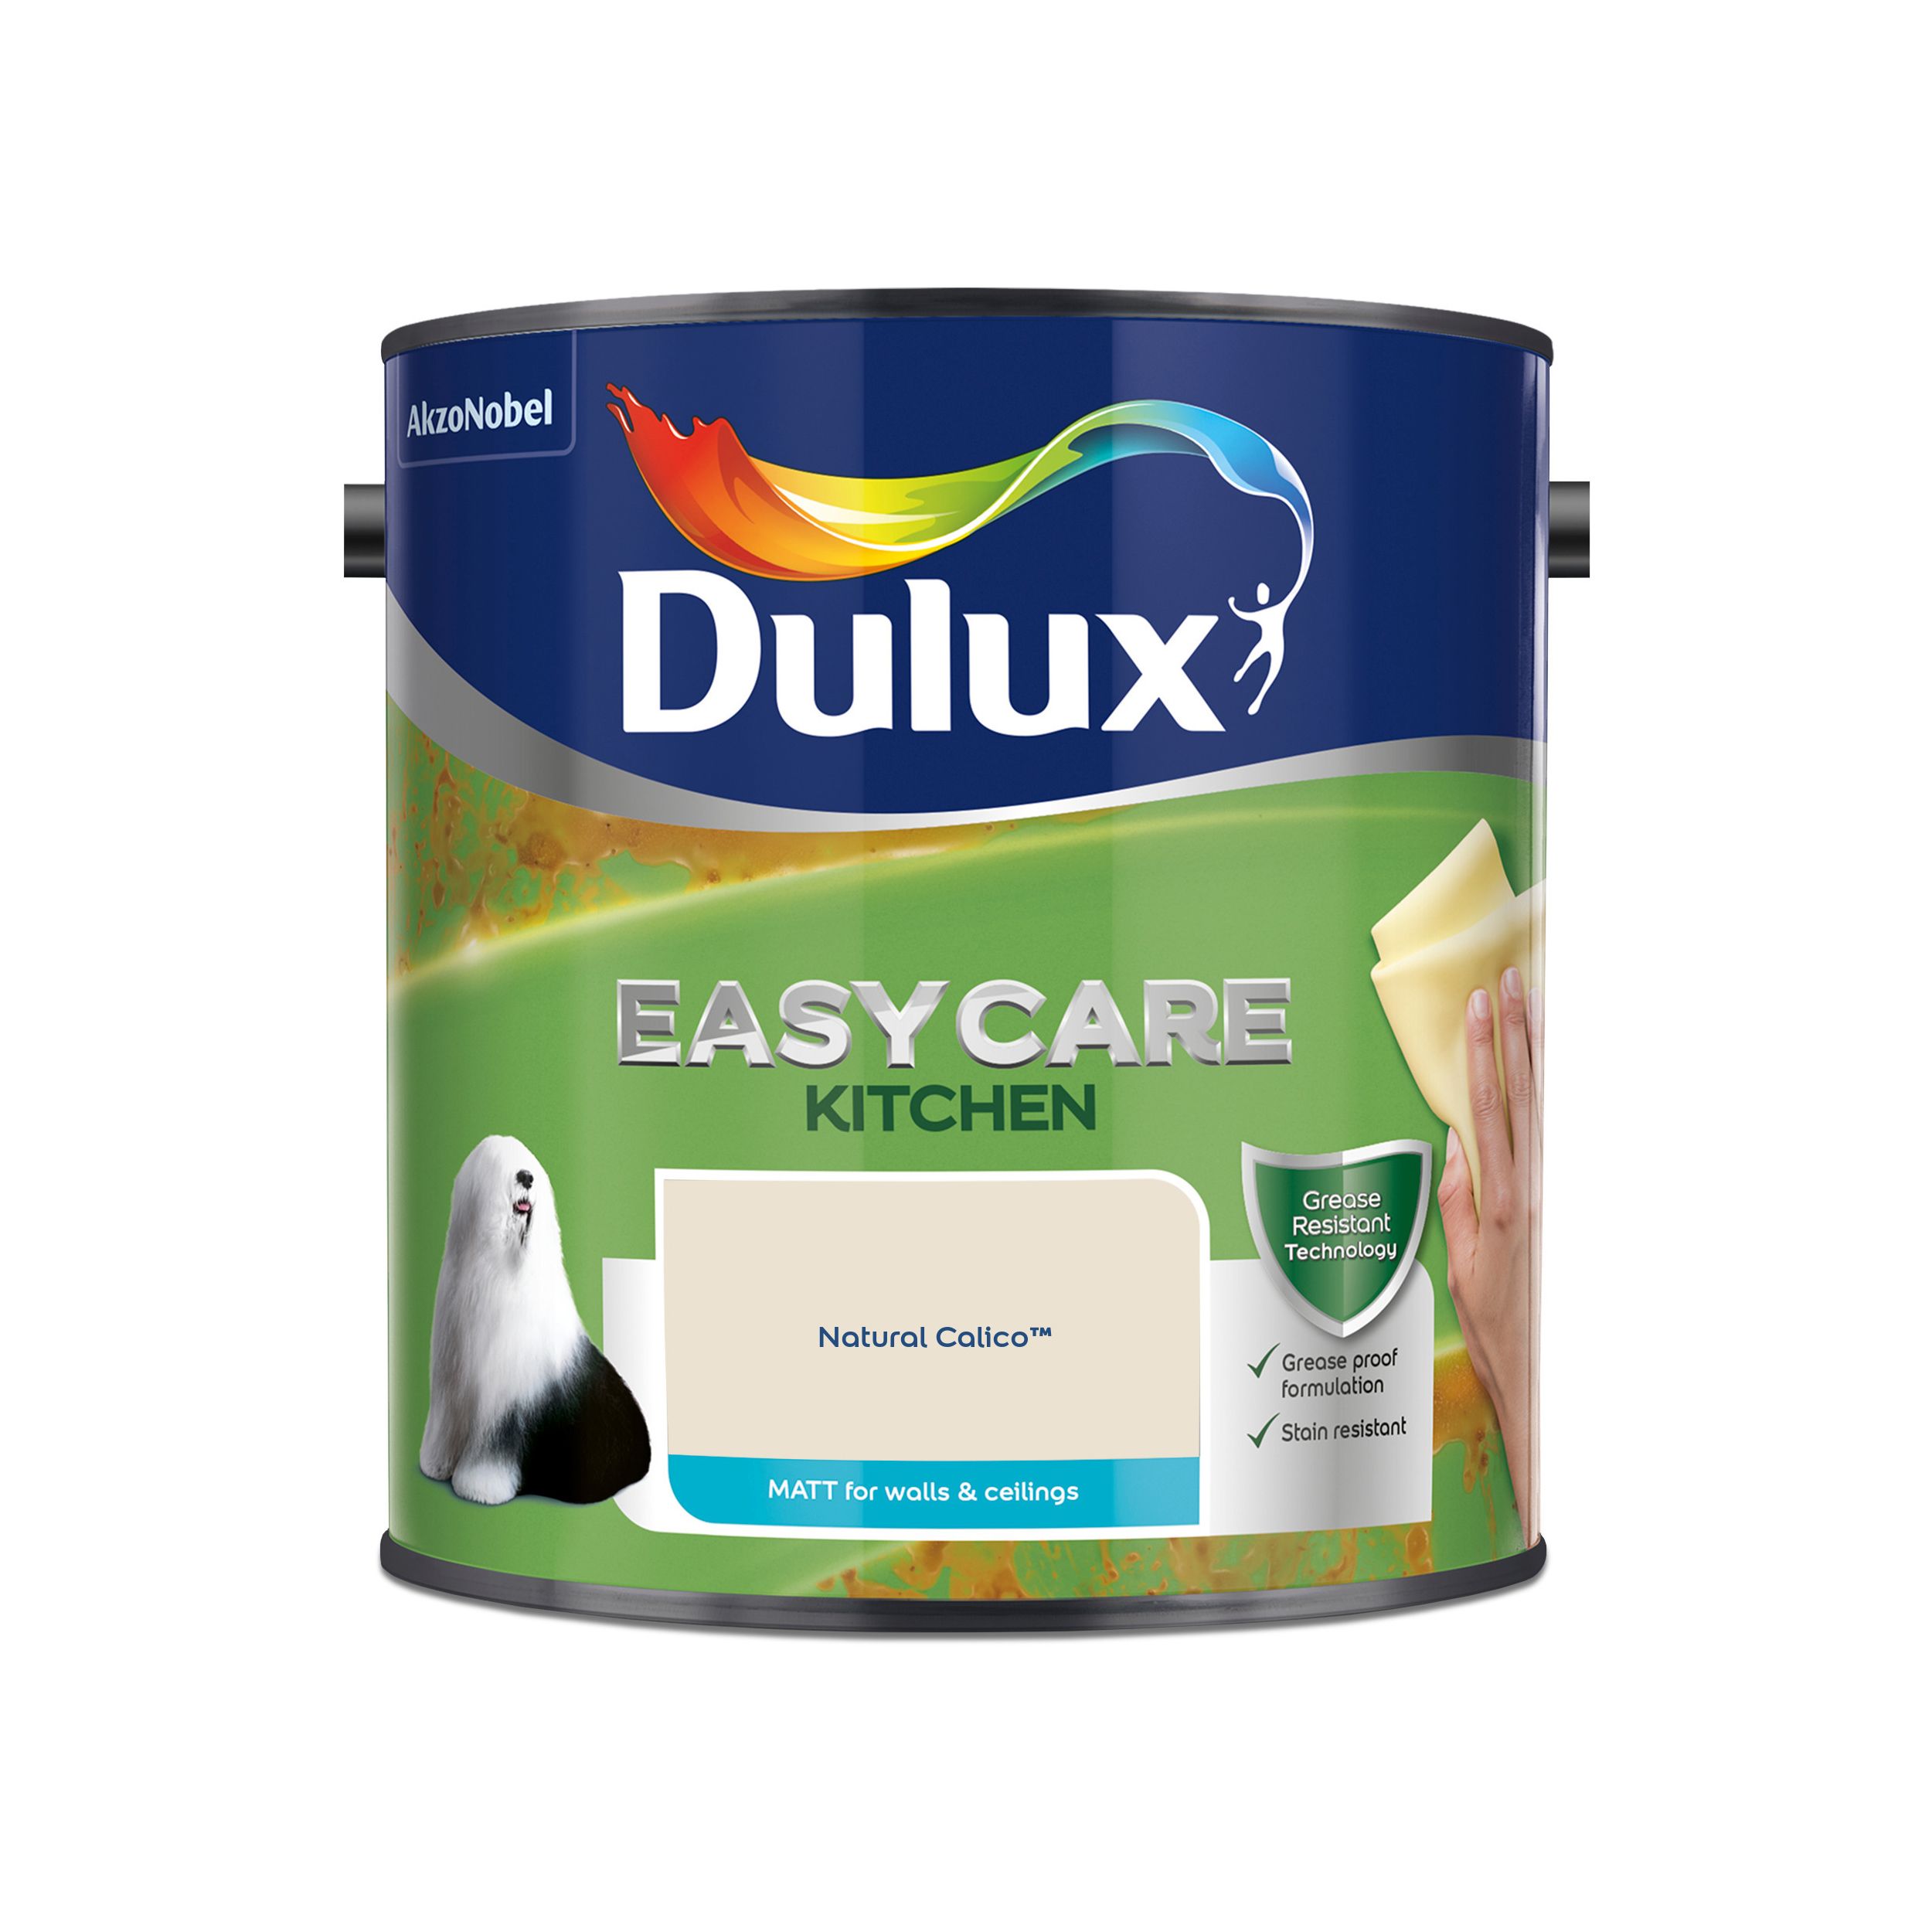 Dulux Easycare Kitchen Natural calico Matt Emulsion paint, 2.5L